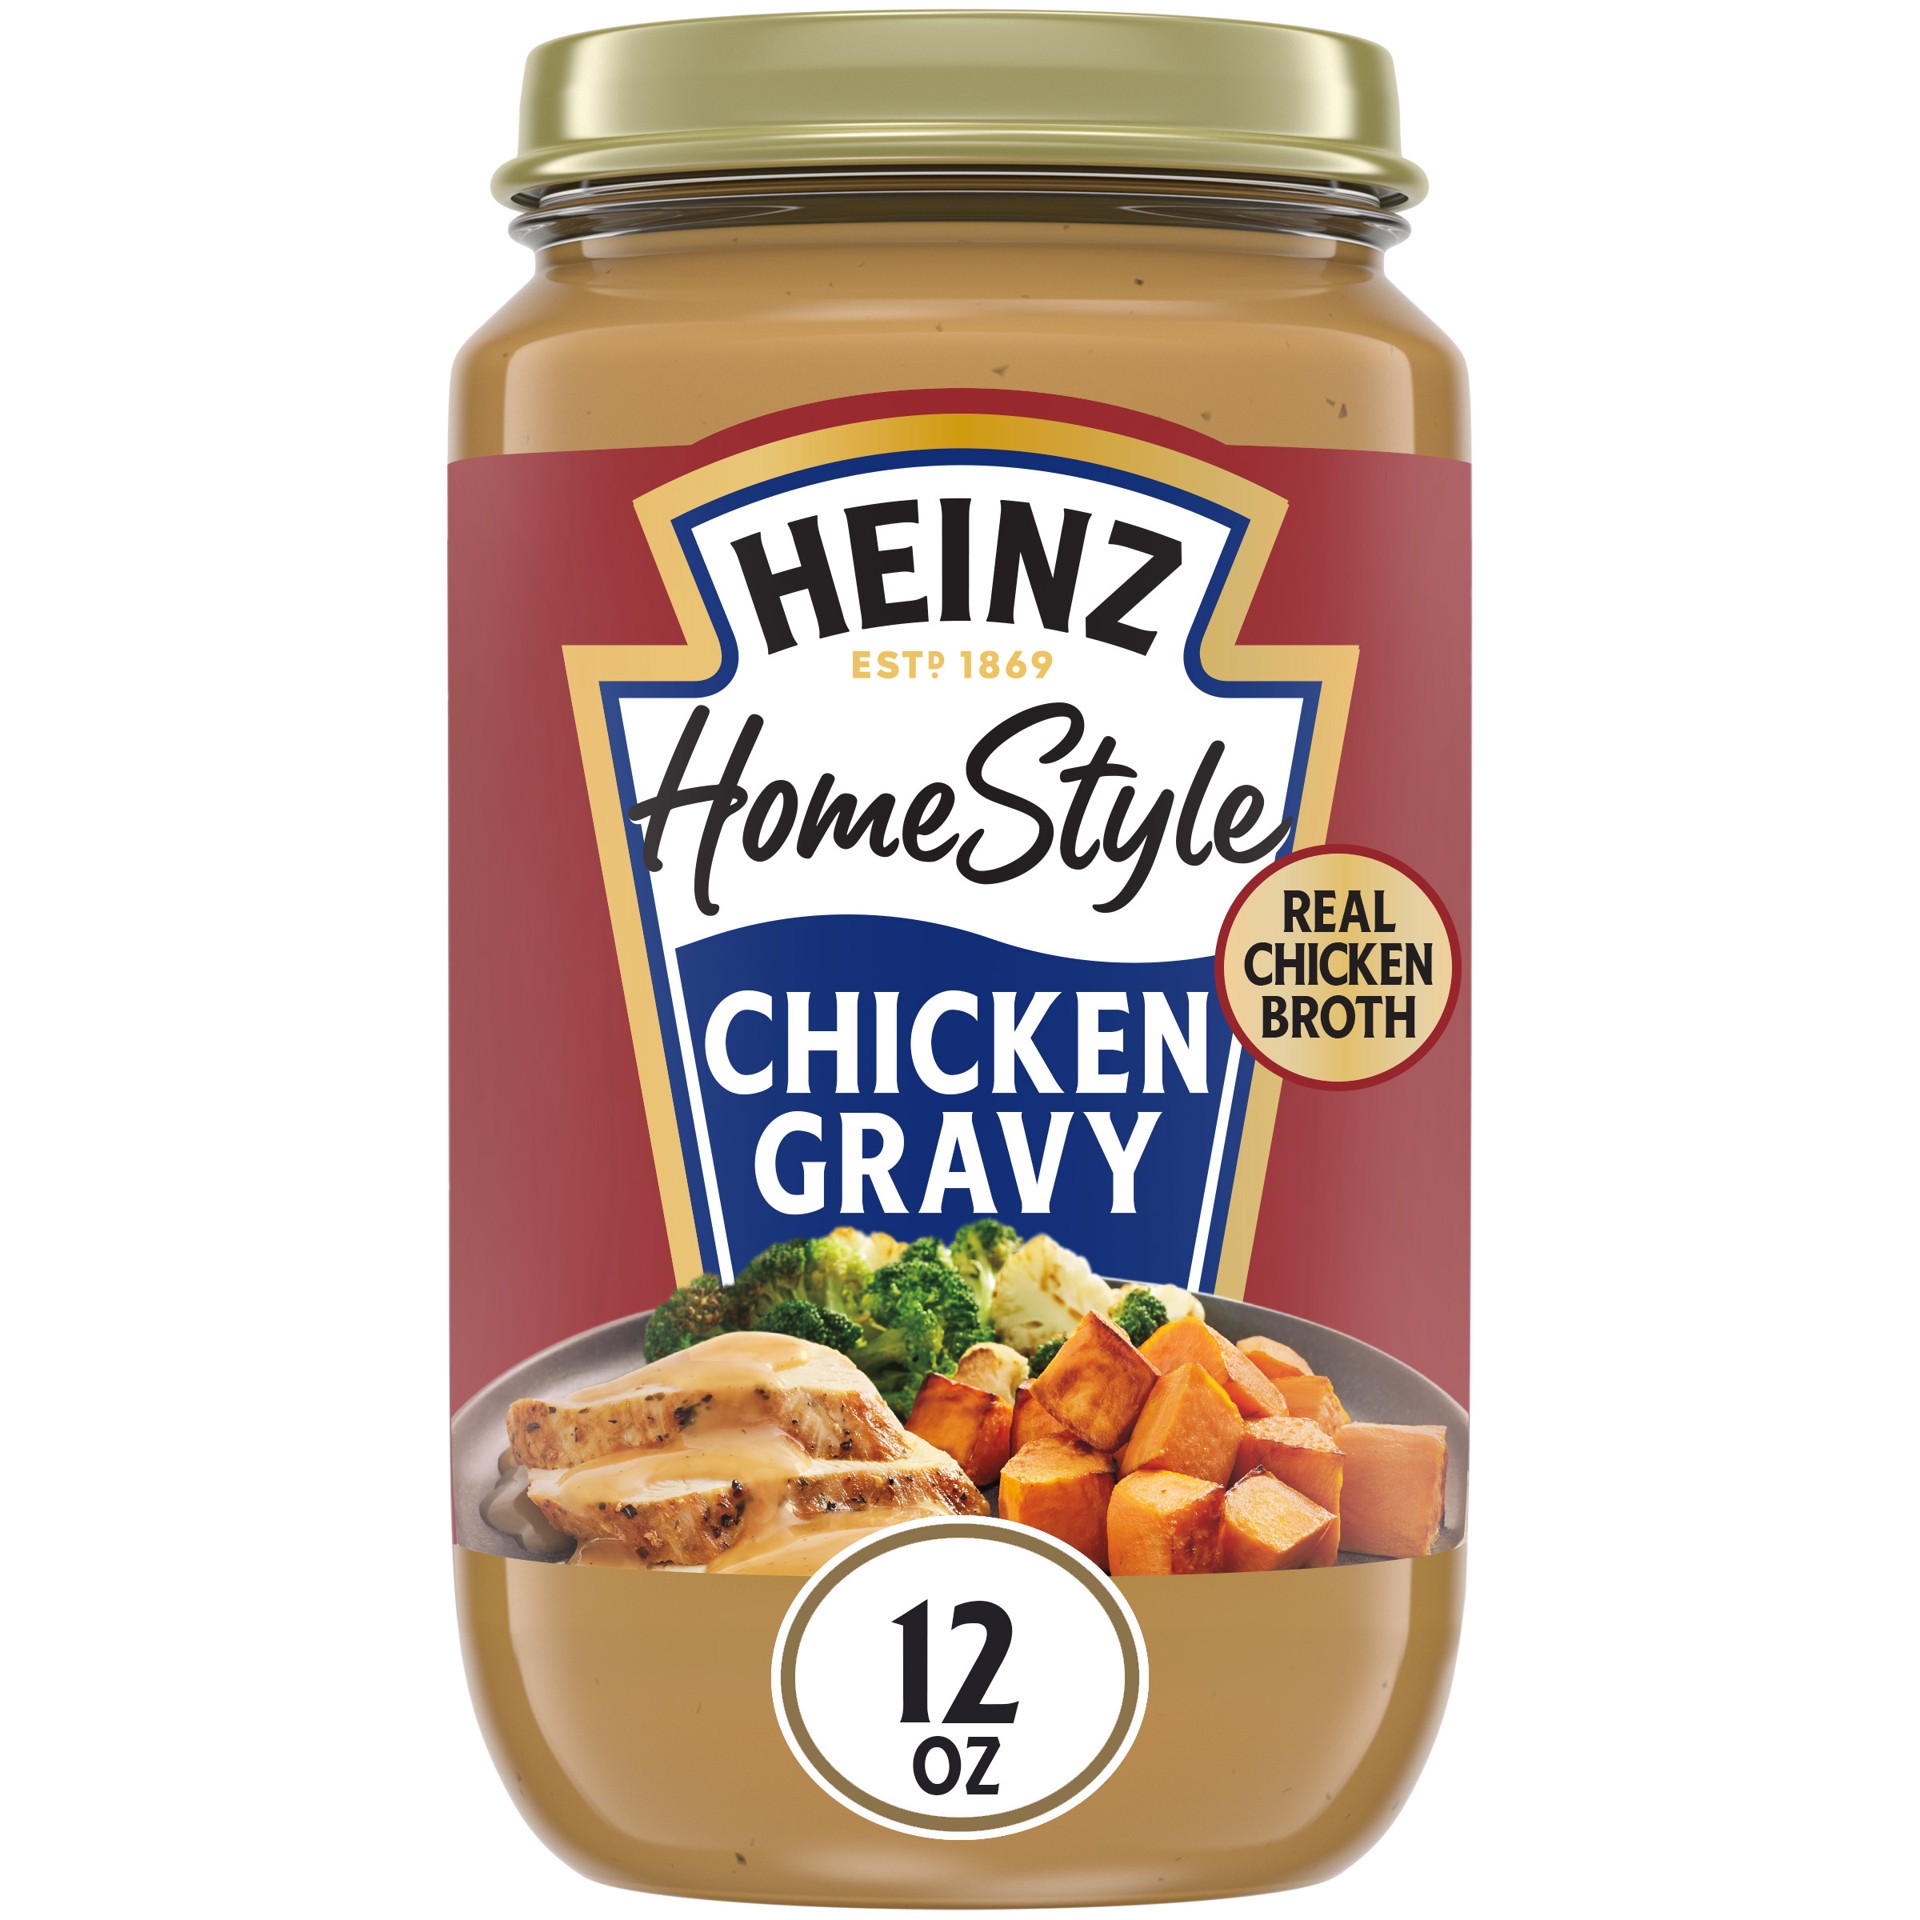 slide 1 of 14, Heinz HomeStyle Classic Chicken Gravy, 12 oz Jar, 12 oz